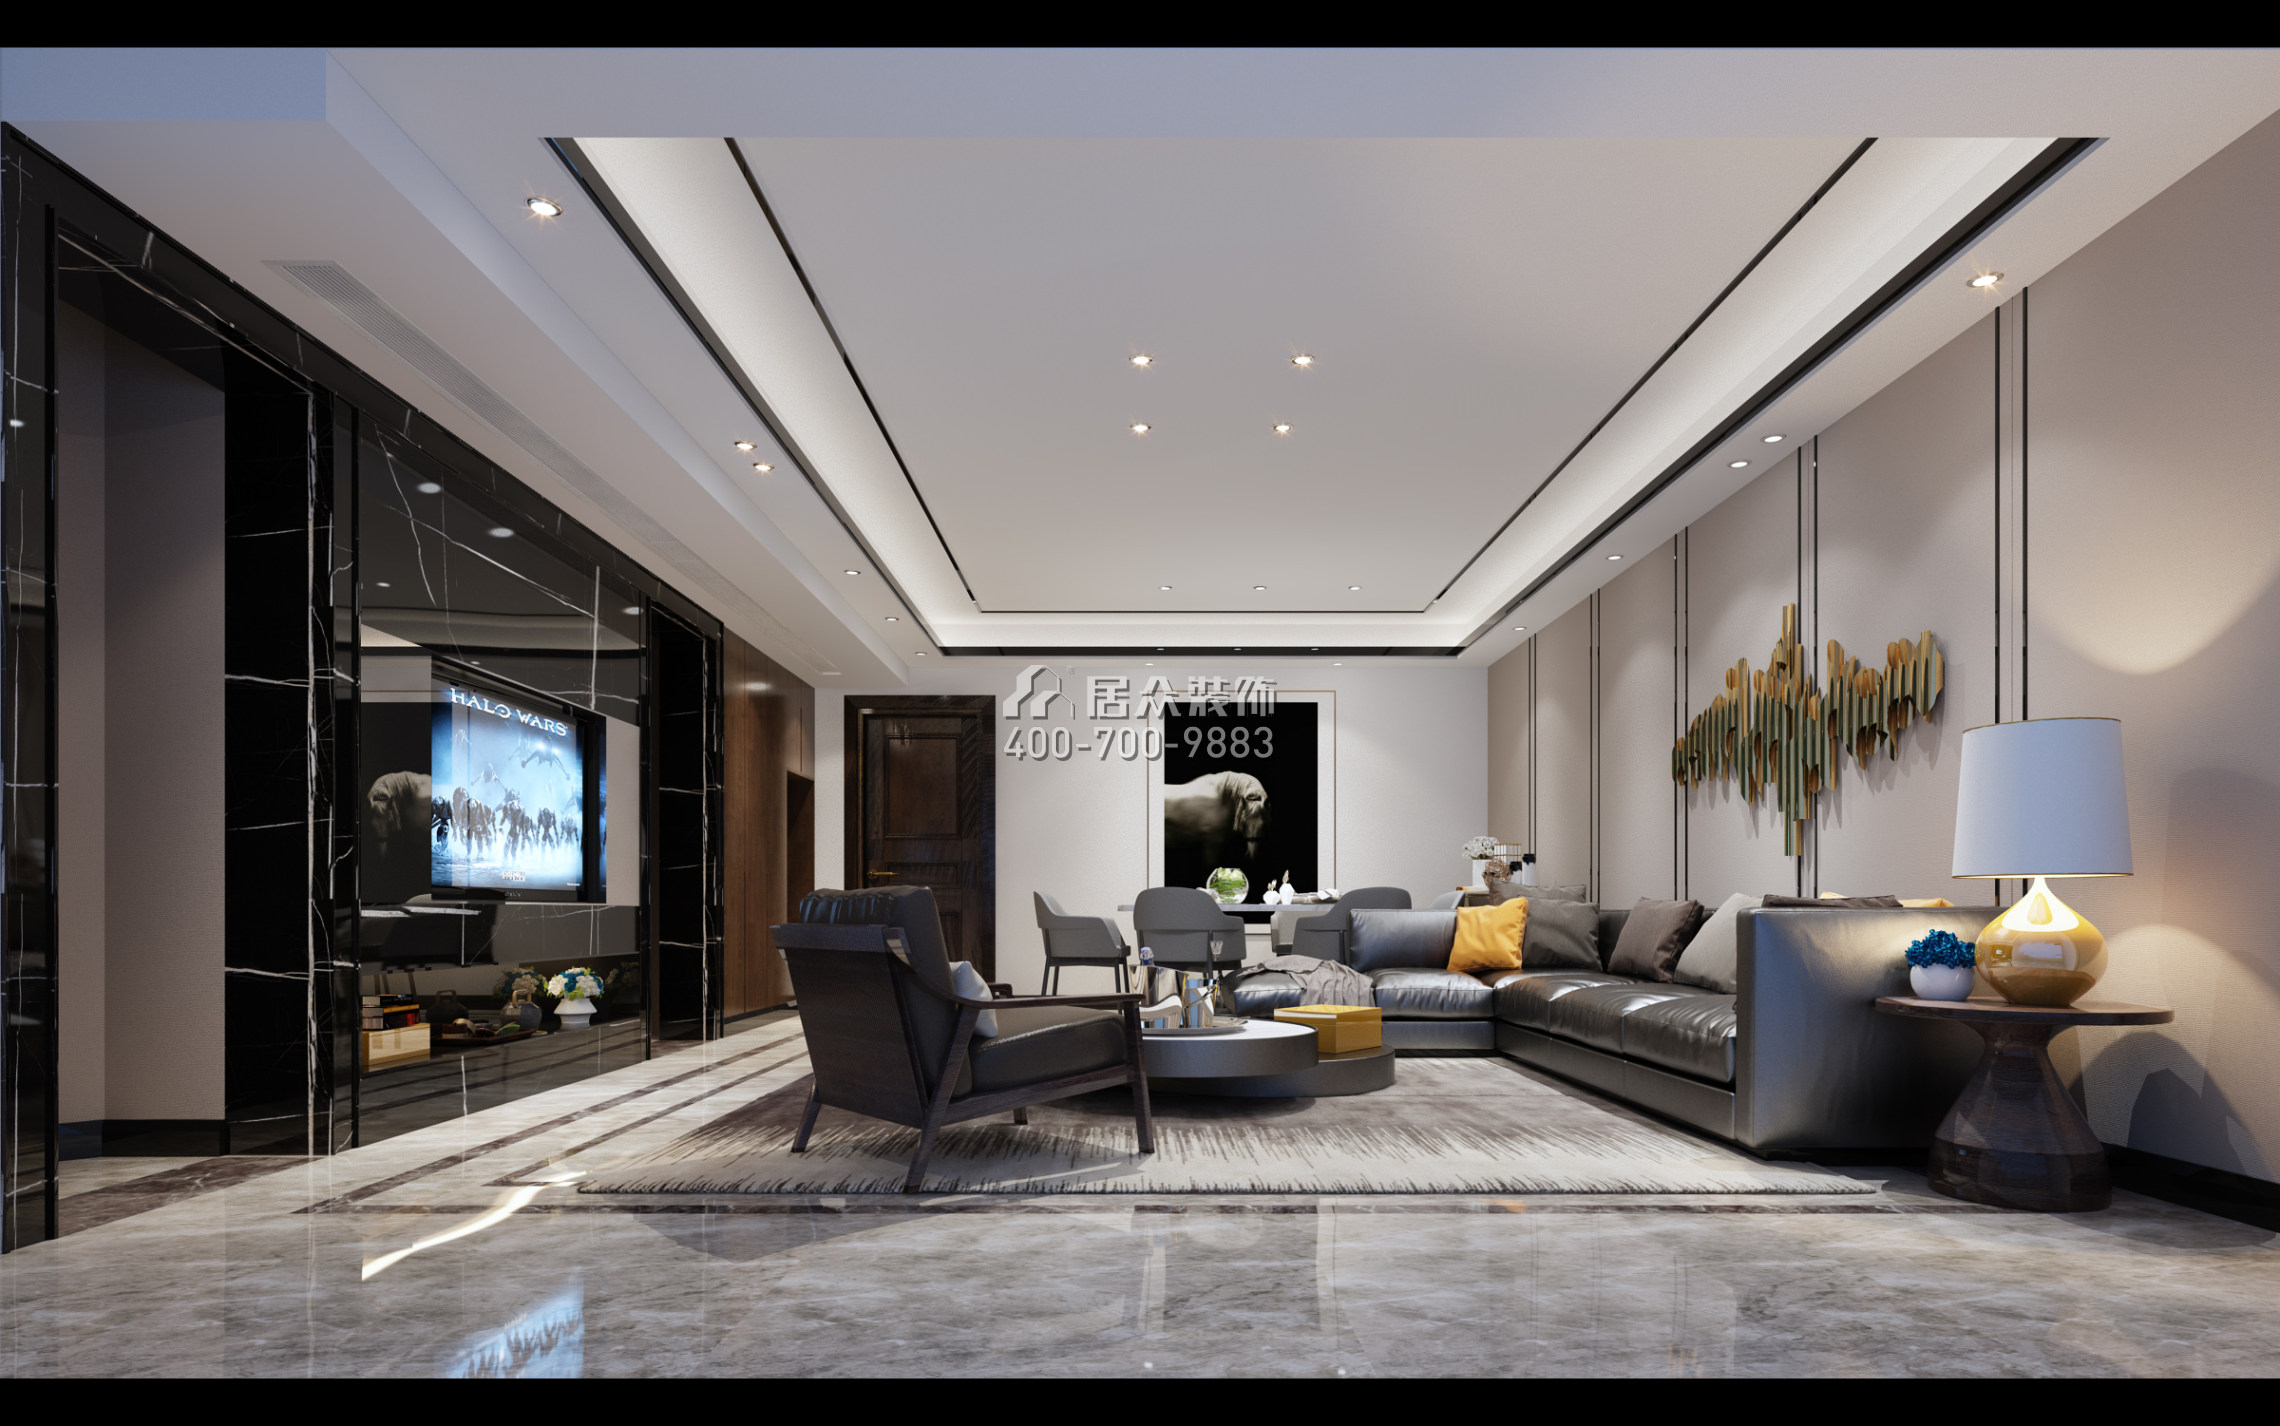 中旅广场118平方米现代简约风格平层户型客厅装修效果图